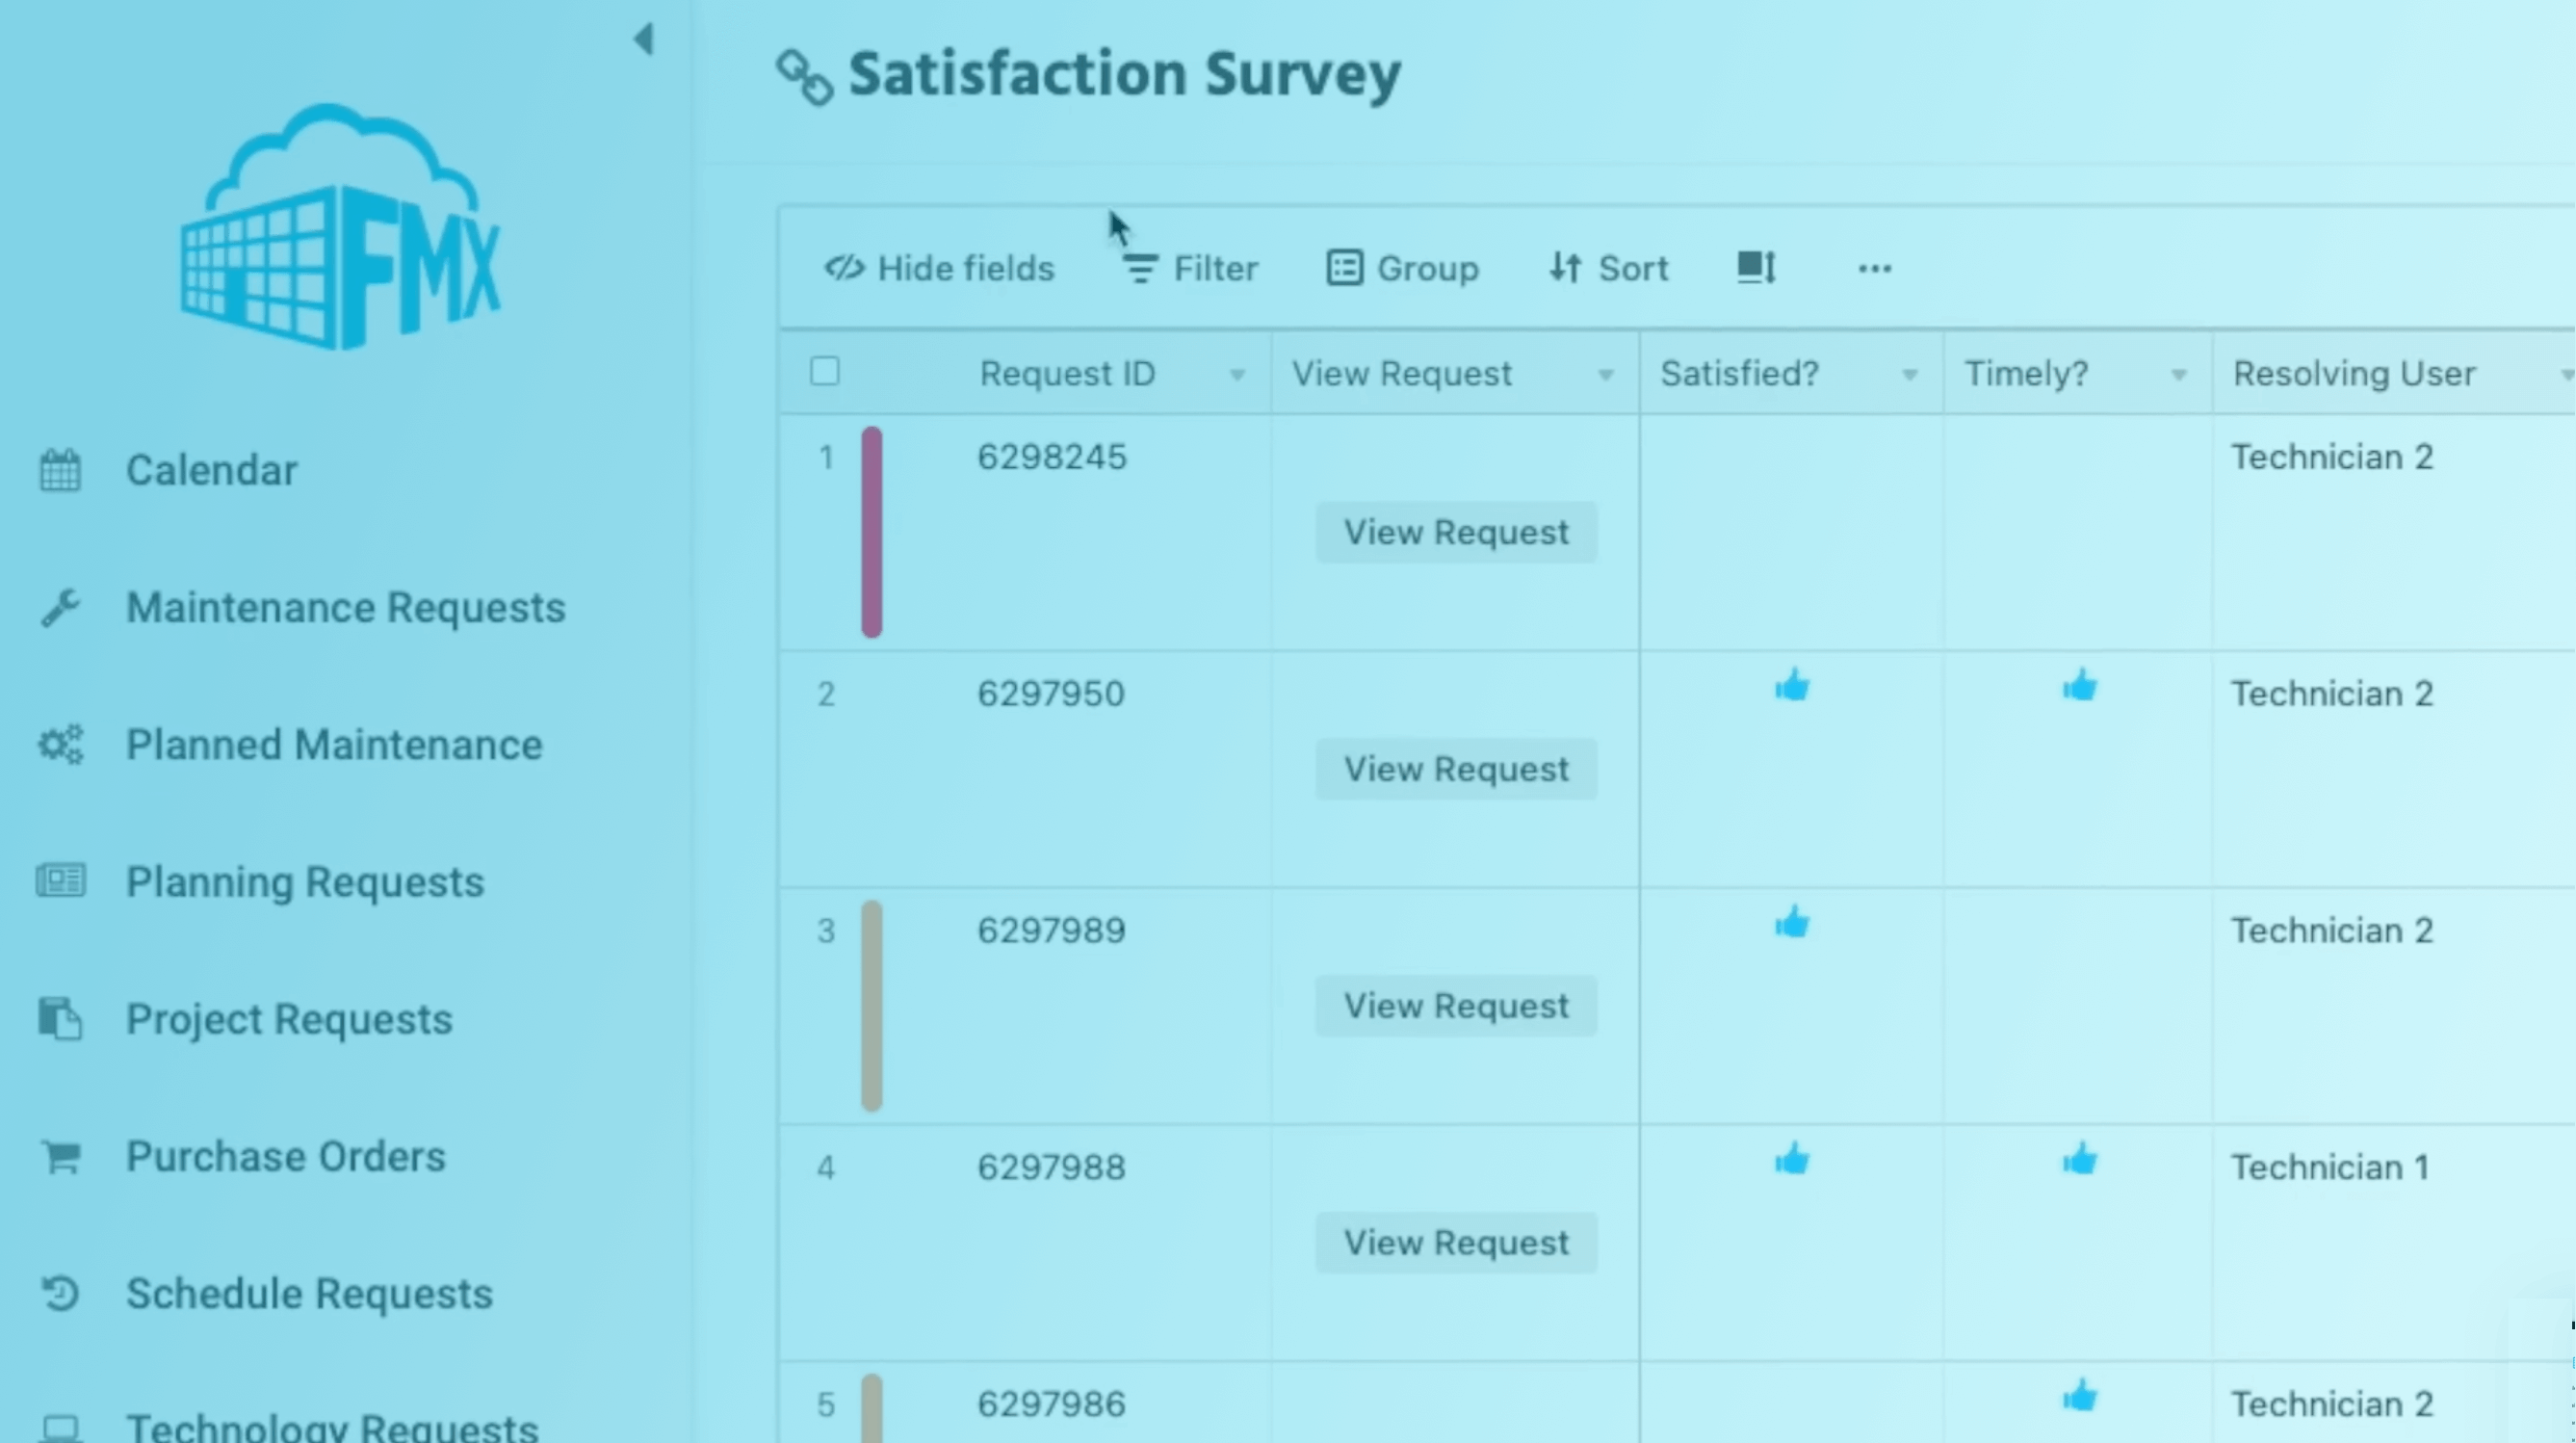 [Hidden] Satisfaction Surveys Add-on